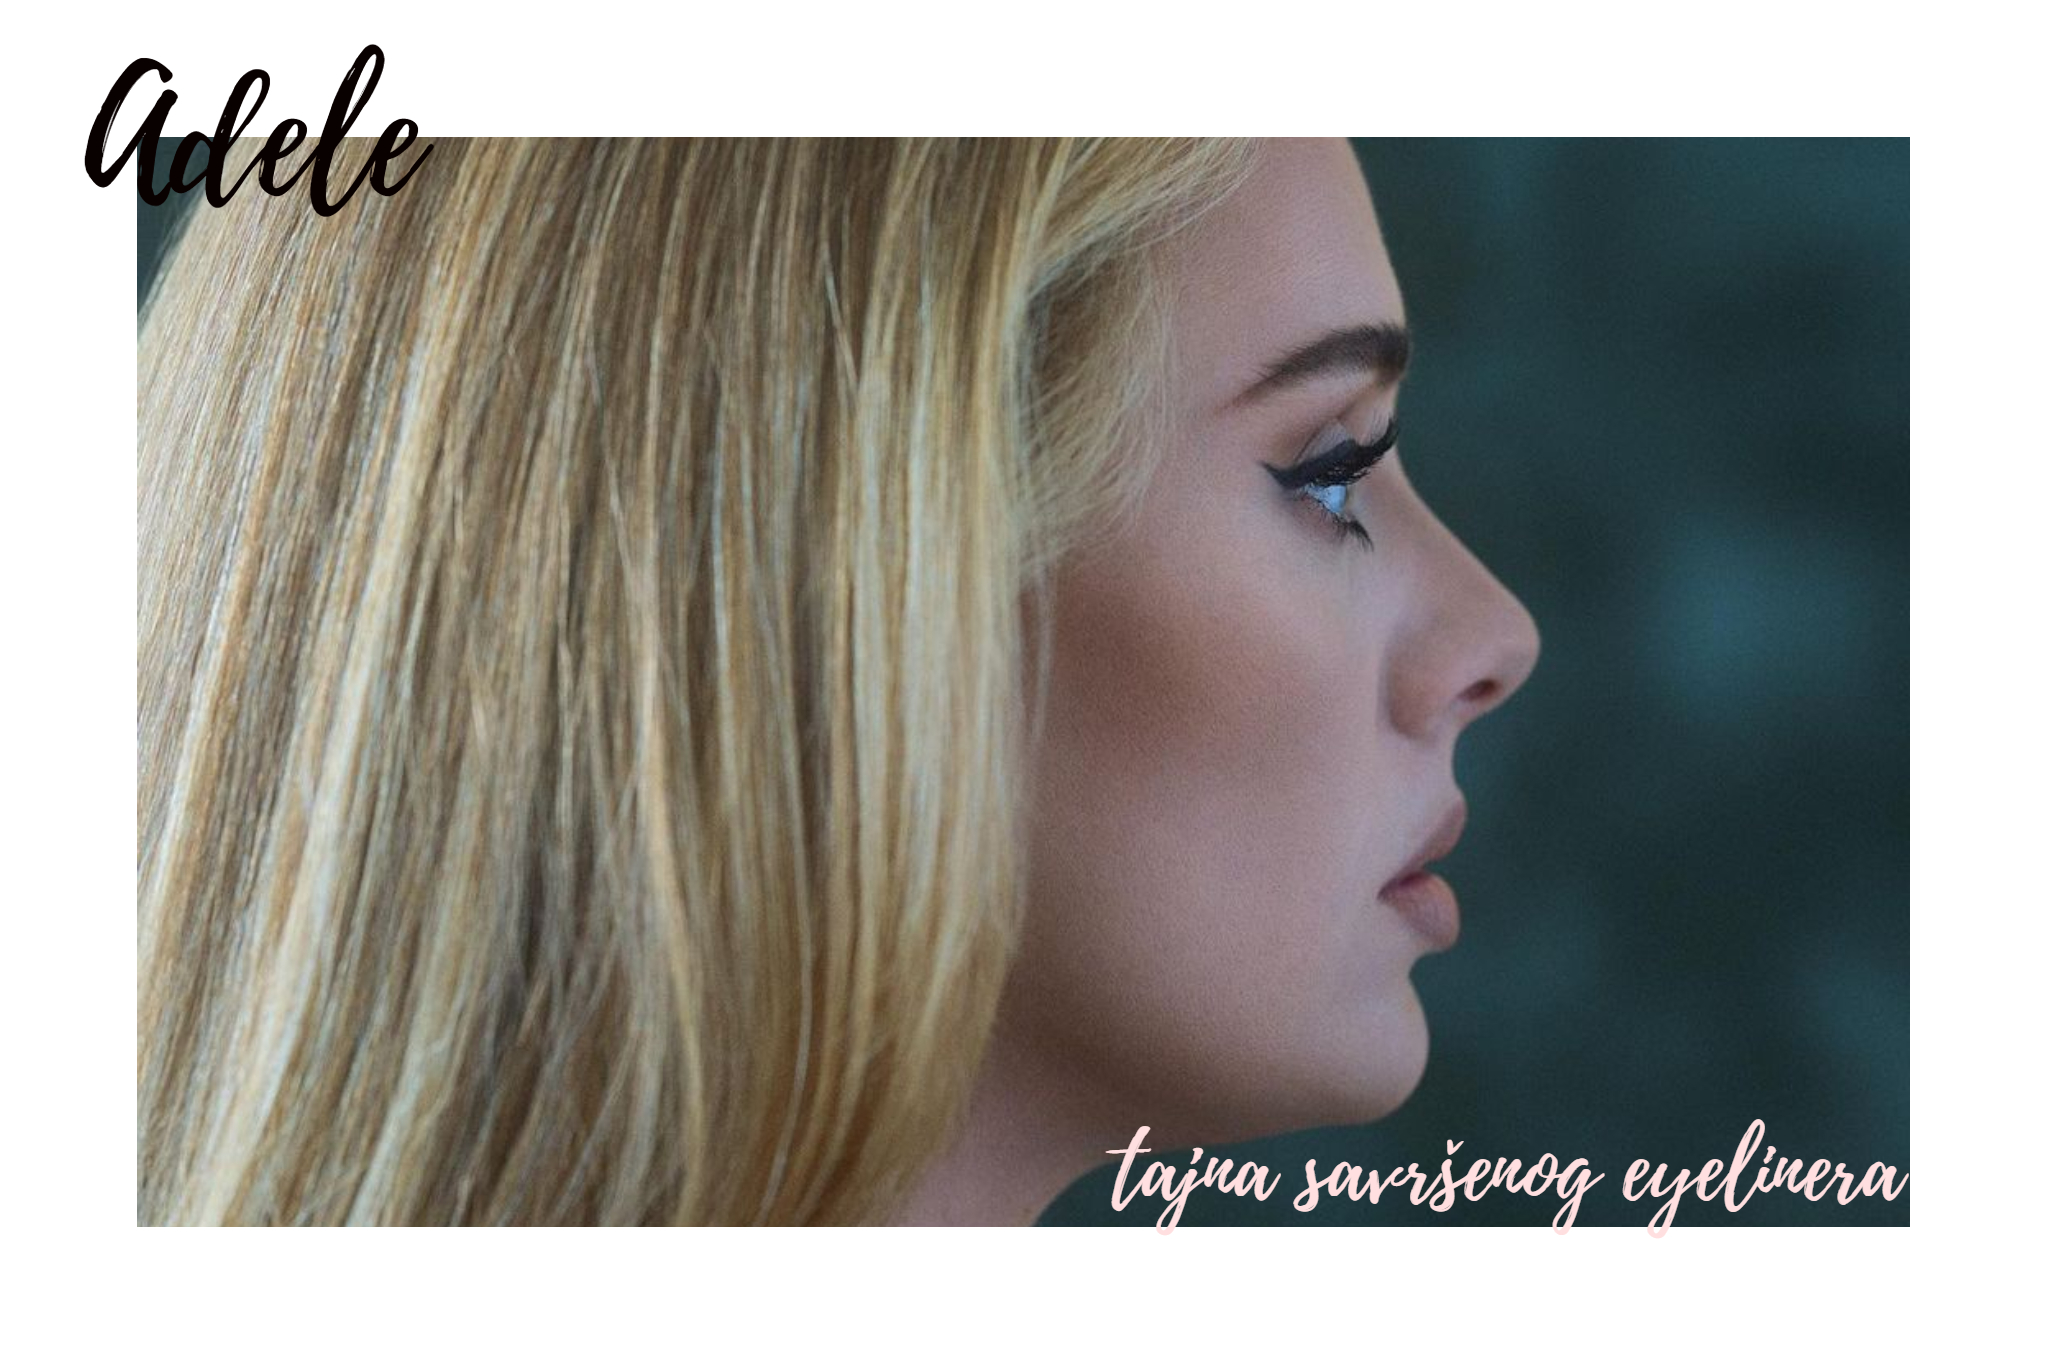 Tajna savrsenog eyelinera - nasminkajte se kao Adele